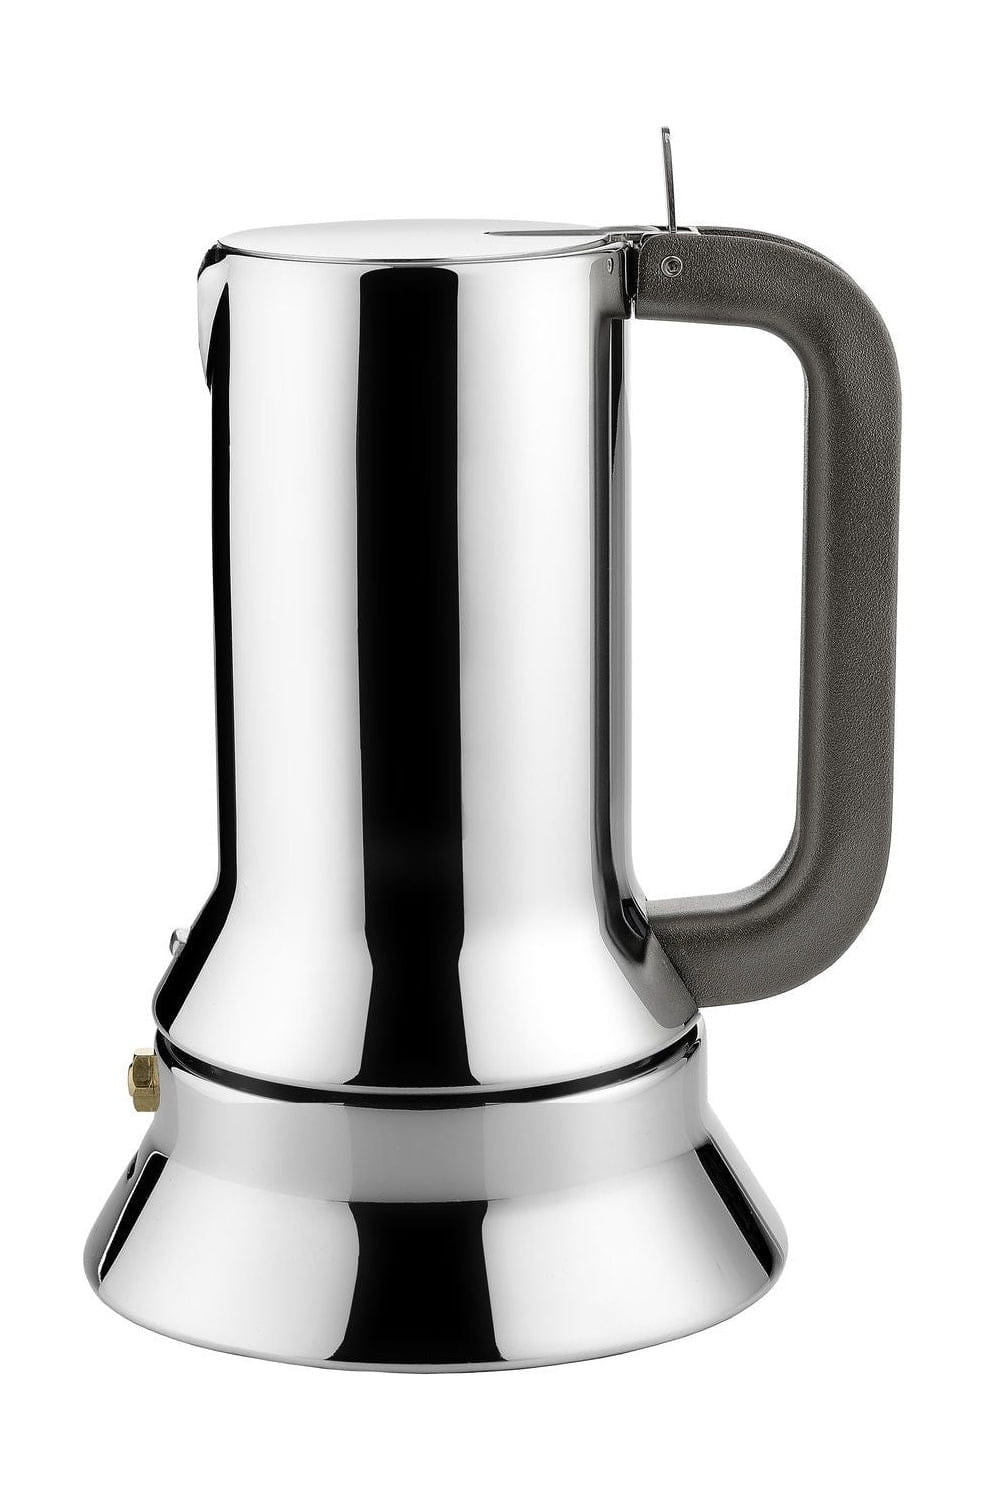 Alessi 9090 Espresso/Coffee Maker, 1 Cup